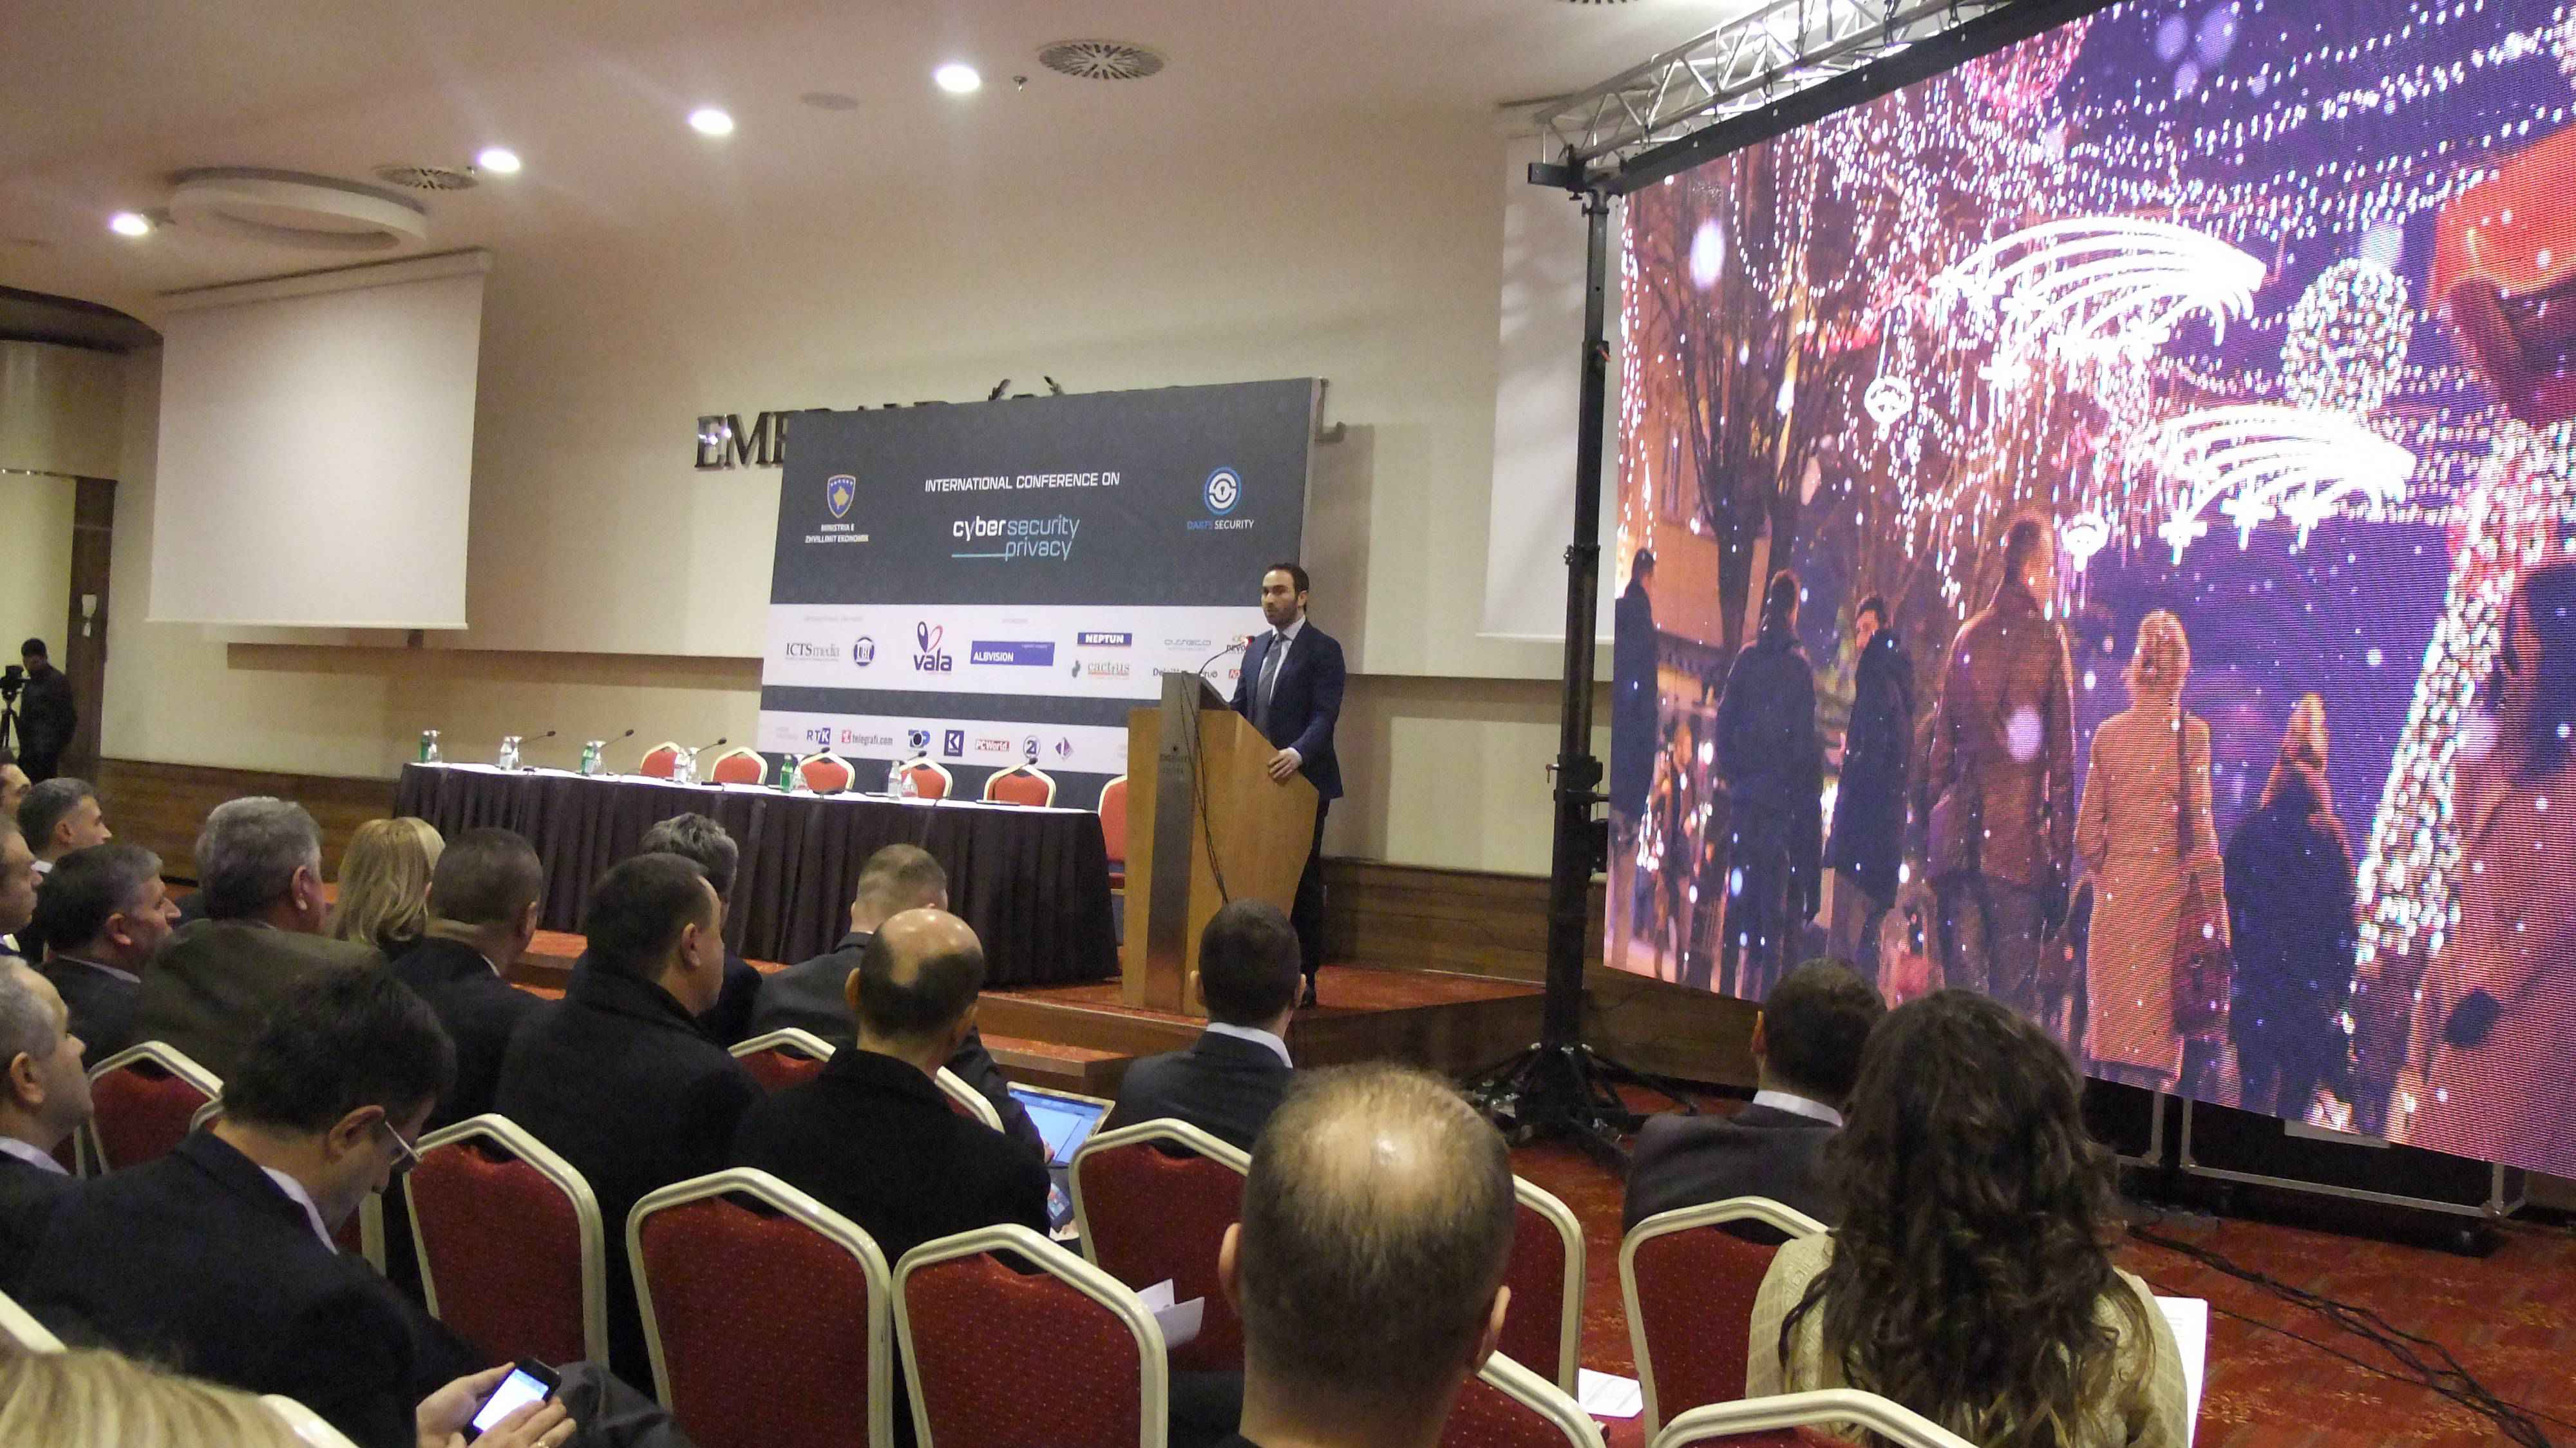 Mbahet konferenca e parë rajonale për siguri kibernetike  